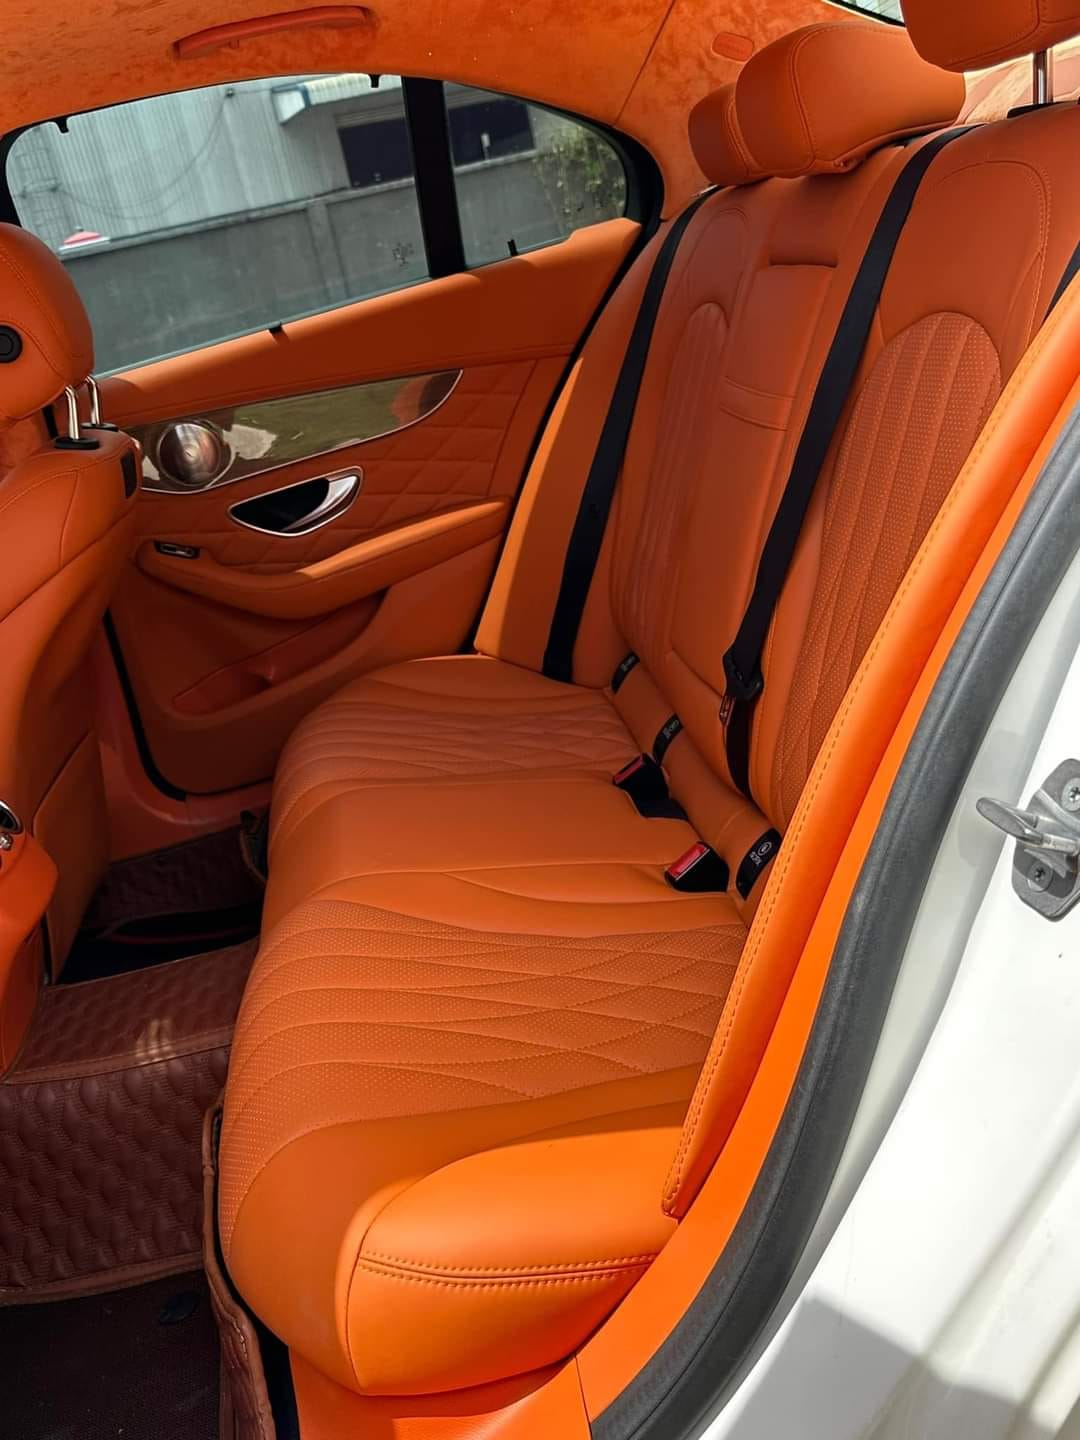 Mercedes C 250 độ kỳ công bán lại chưa đến 900 triệu, dân tình nhận xét: ‘Nhìn nội thất hết muốn lên xe’ - ảnh 4